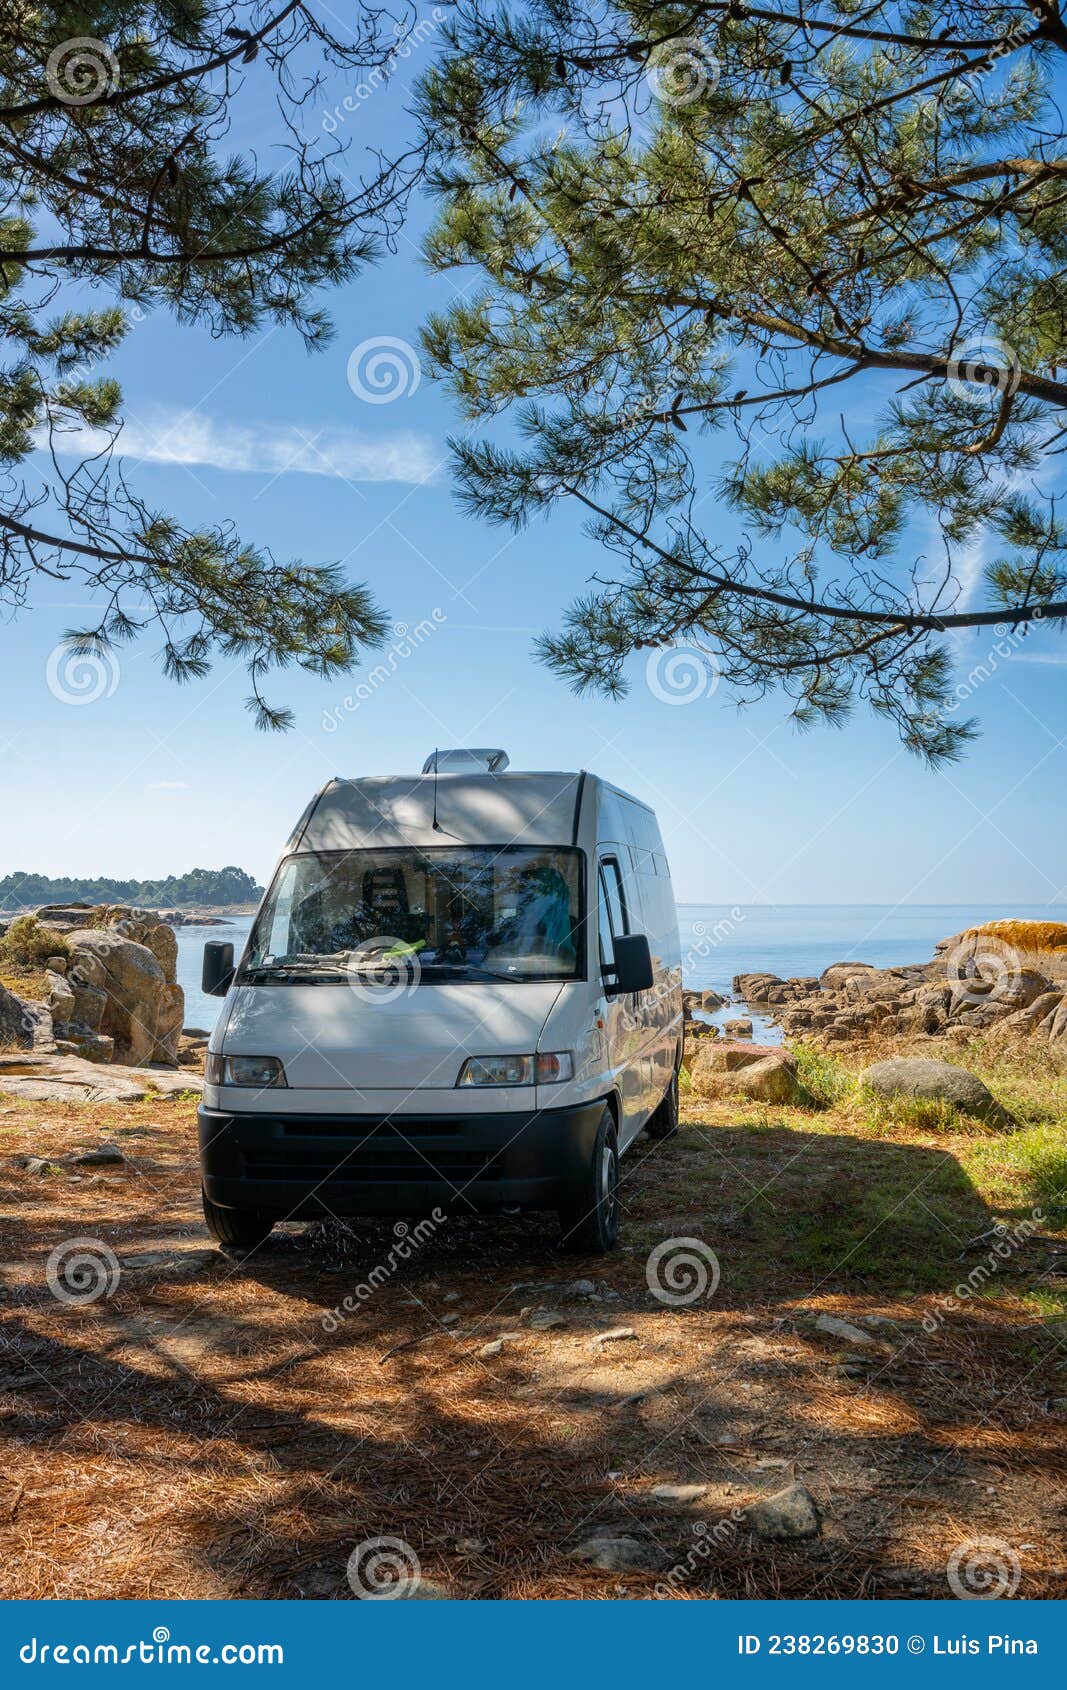 camper van on a wild beach in arousa island living van life in galicia, spain